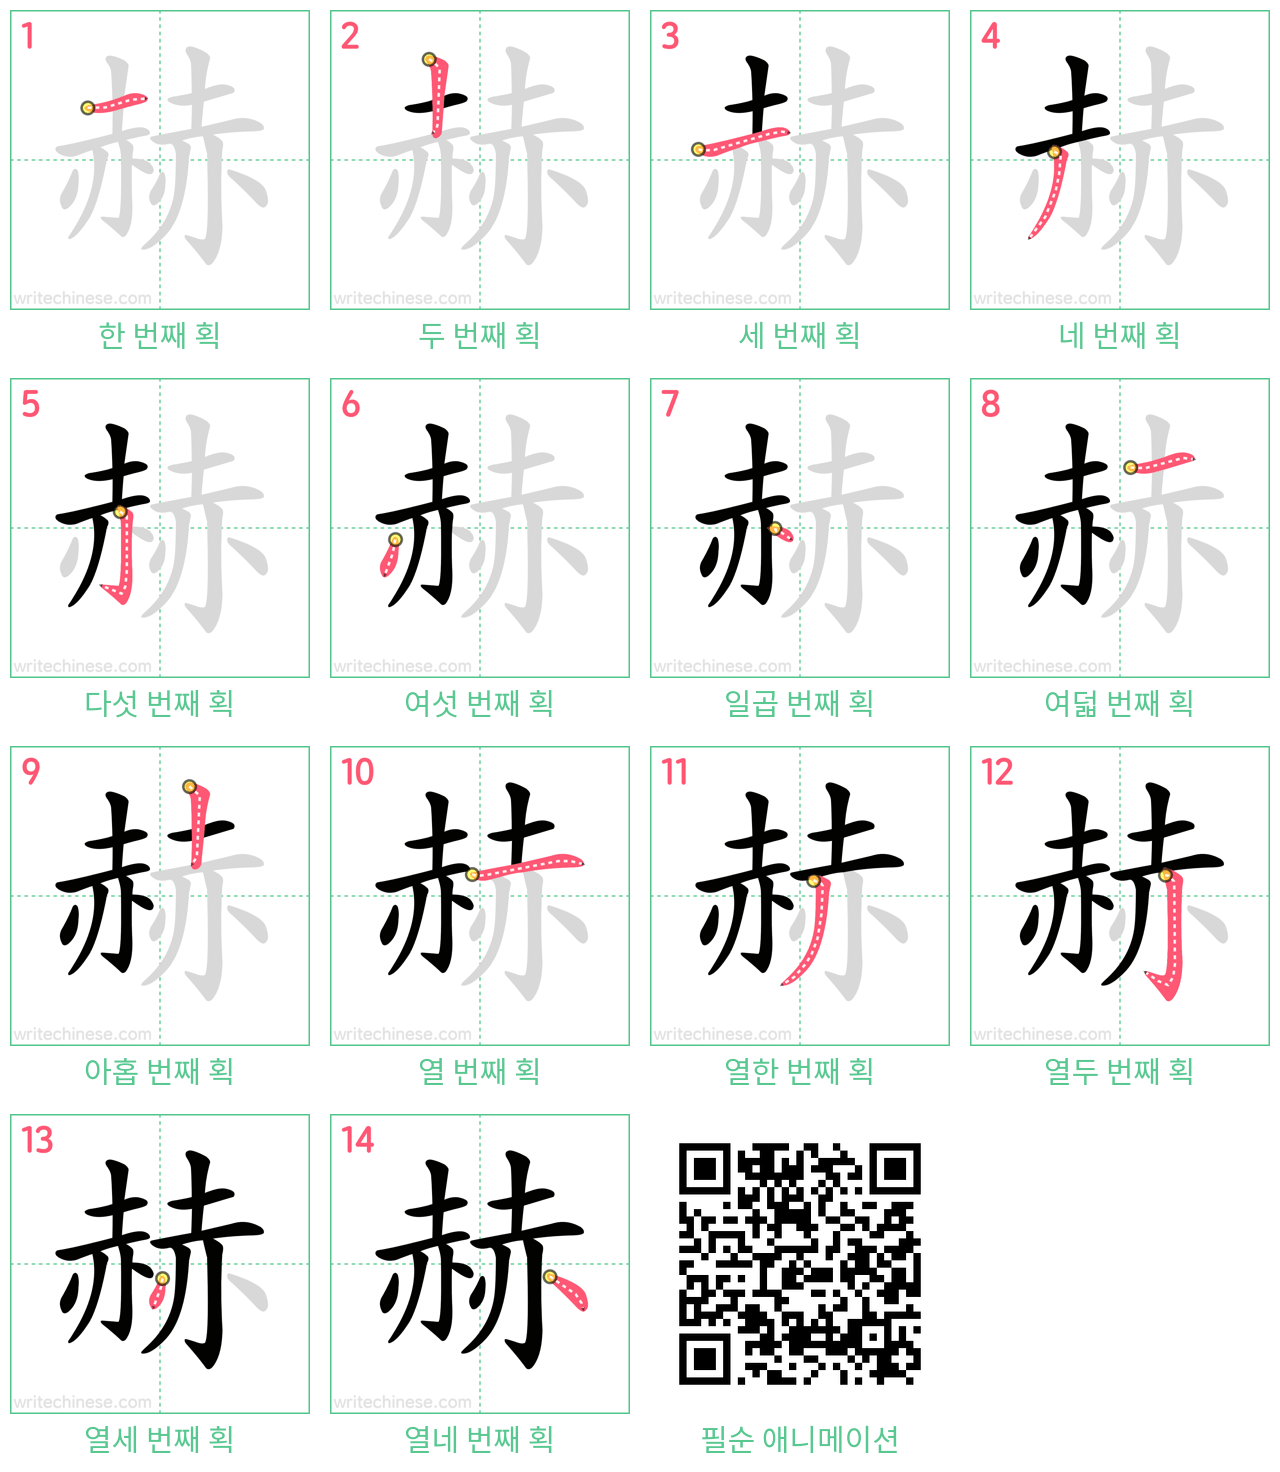 赫 step-by-step stroke order diagrams